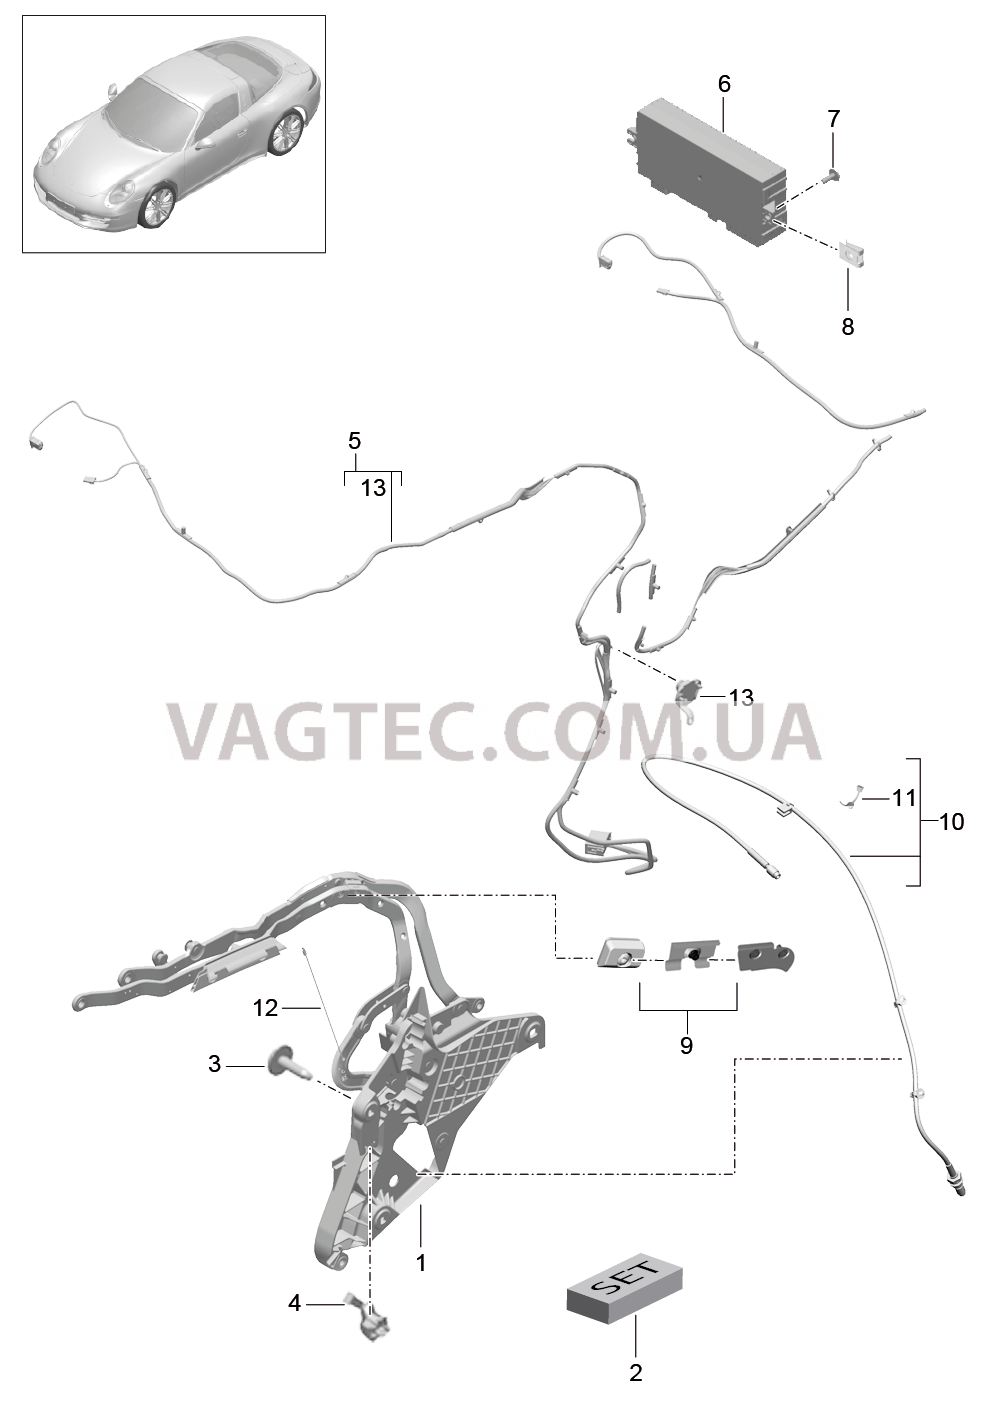 811-027 Каркас складного верха, Отдельные детали, боковой, и, Электродетали
						
						TARGA для PORSCHE 911.Carrera 2012-2016USA